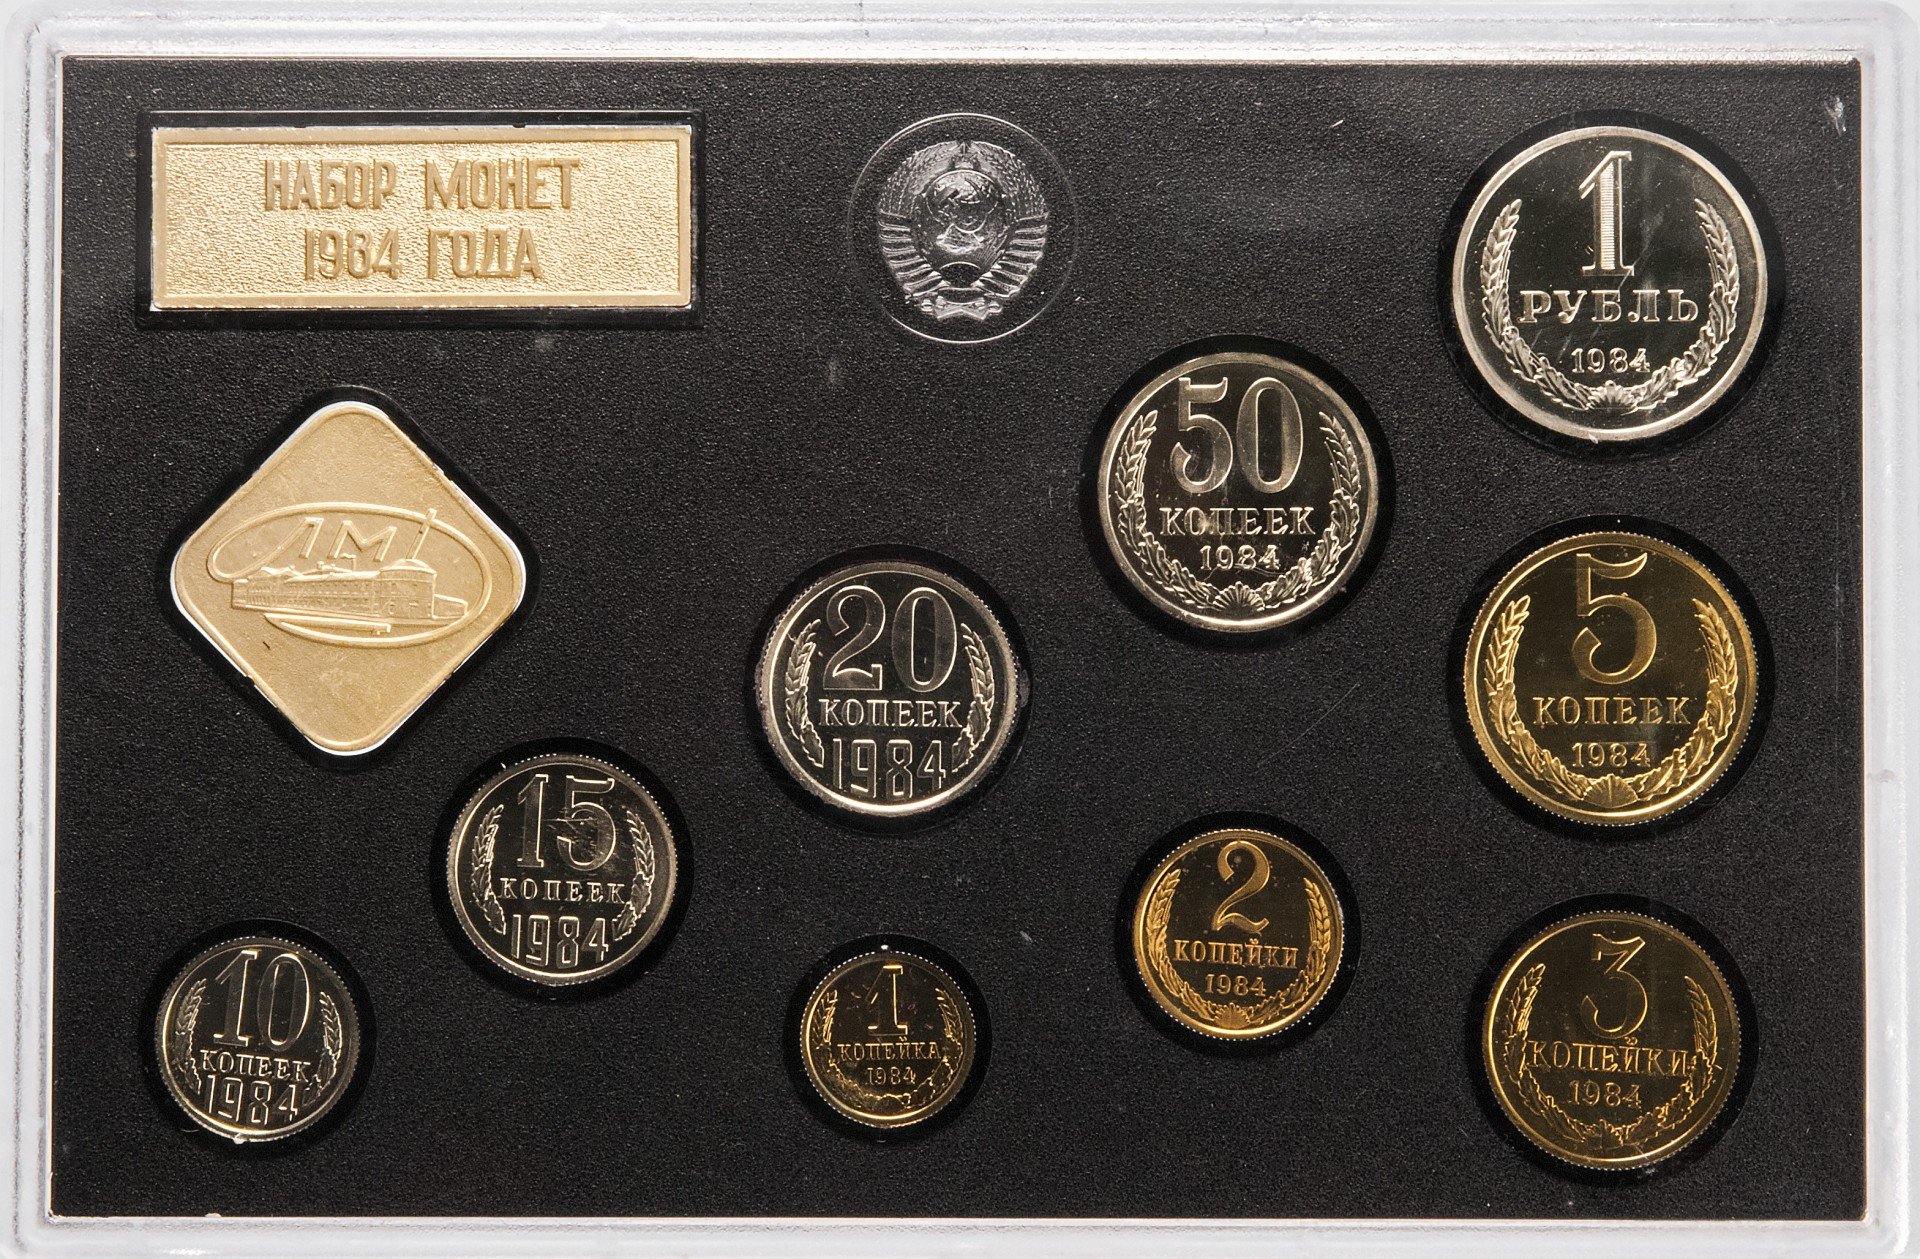 50 рублей 20 копеек. Набор монет СССР 1984. Годовой набор монет. Монеты 1984 года. Монетовидные жетоны старинные.